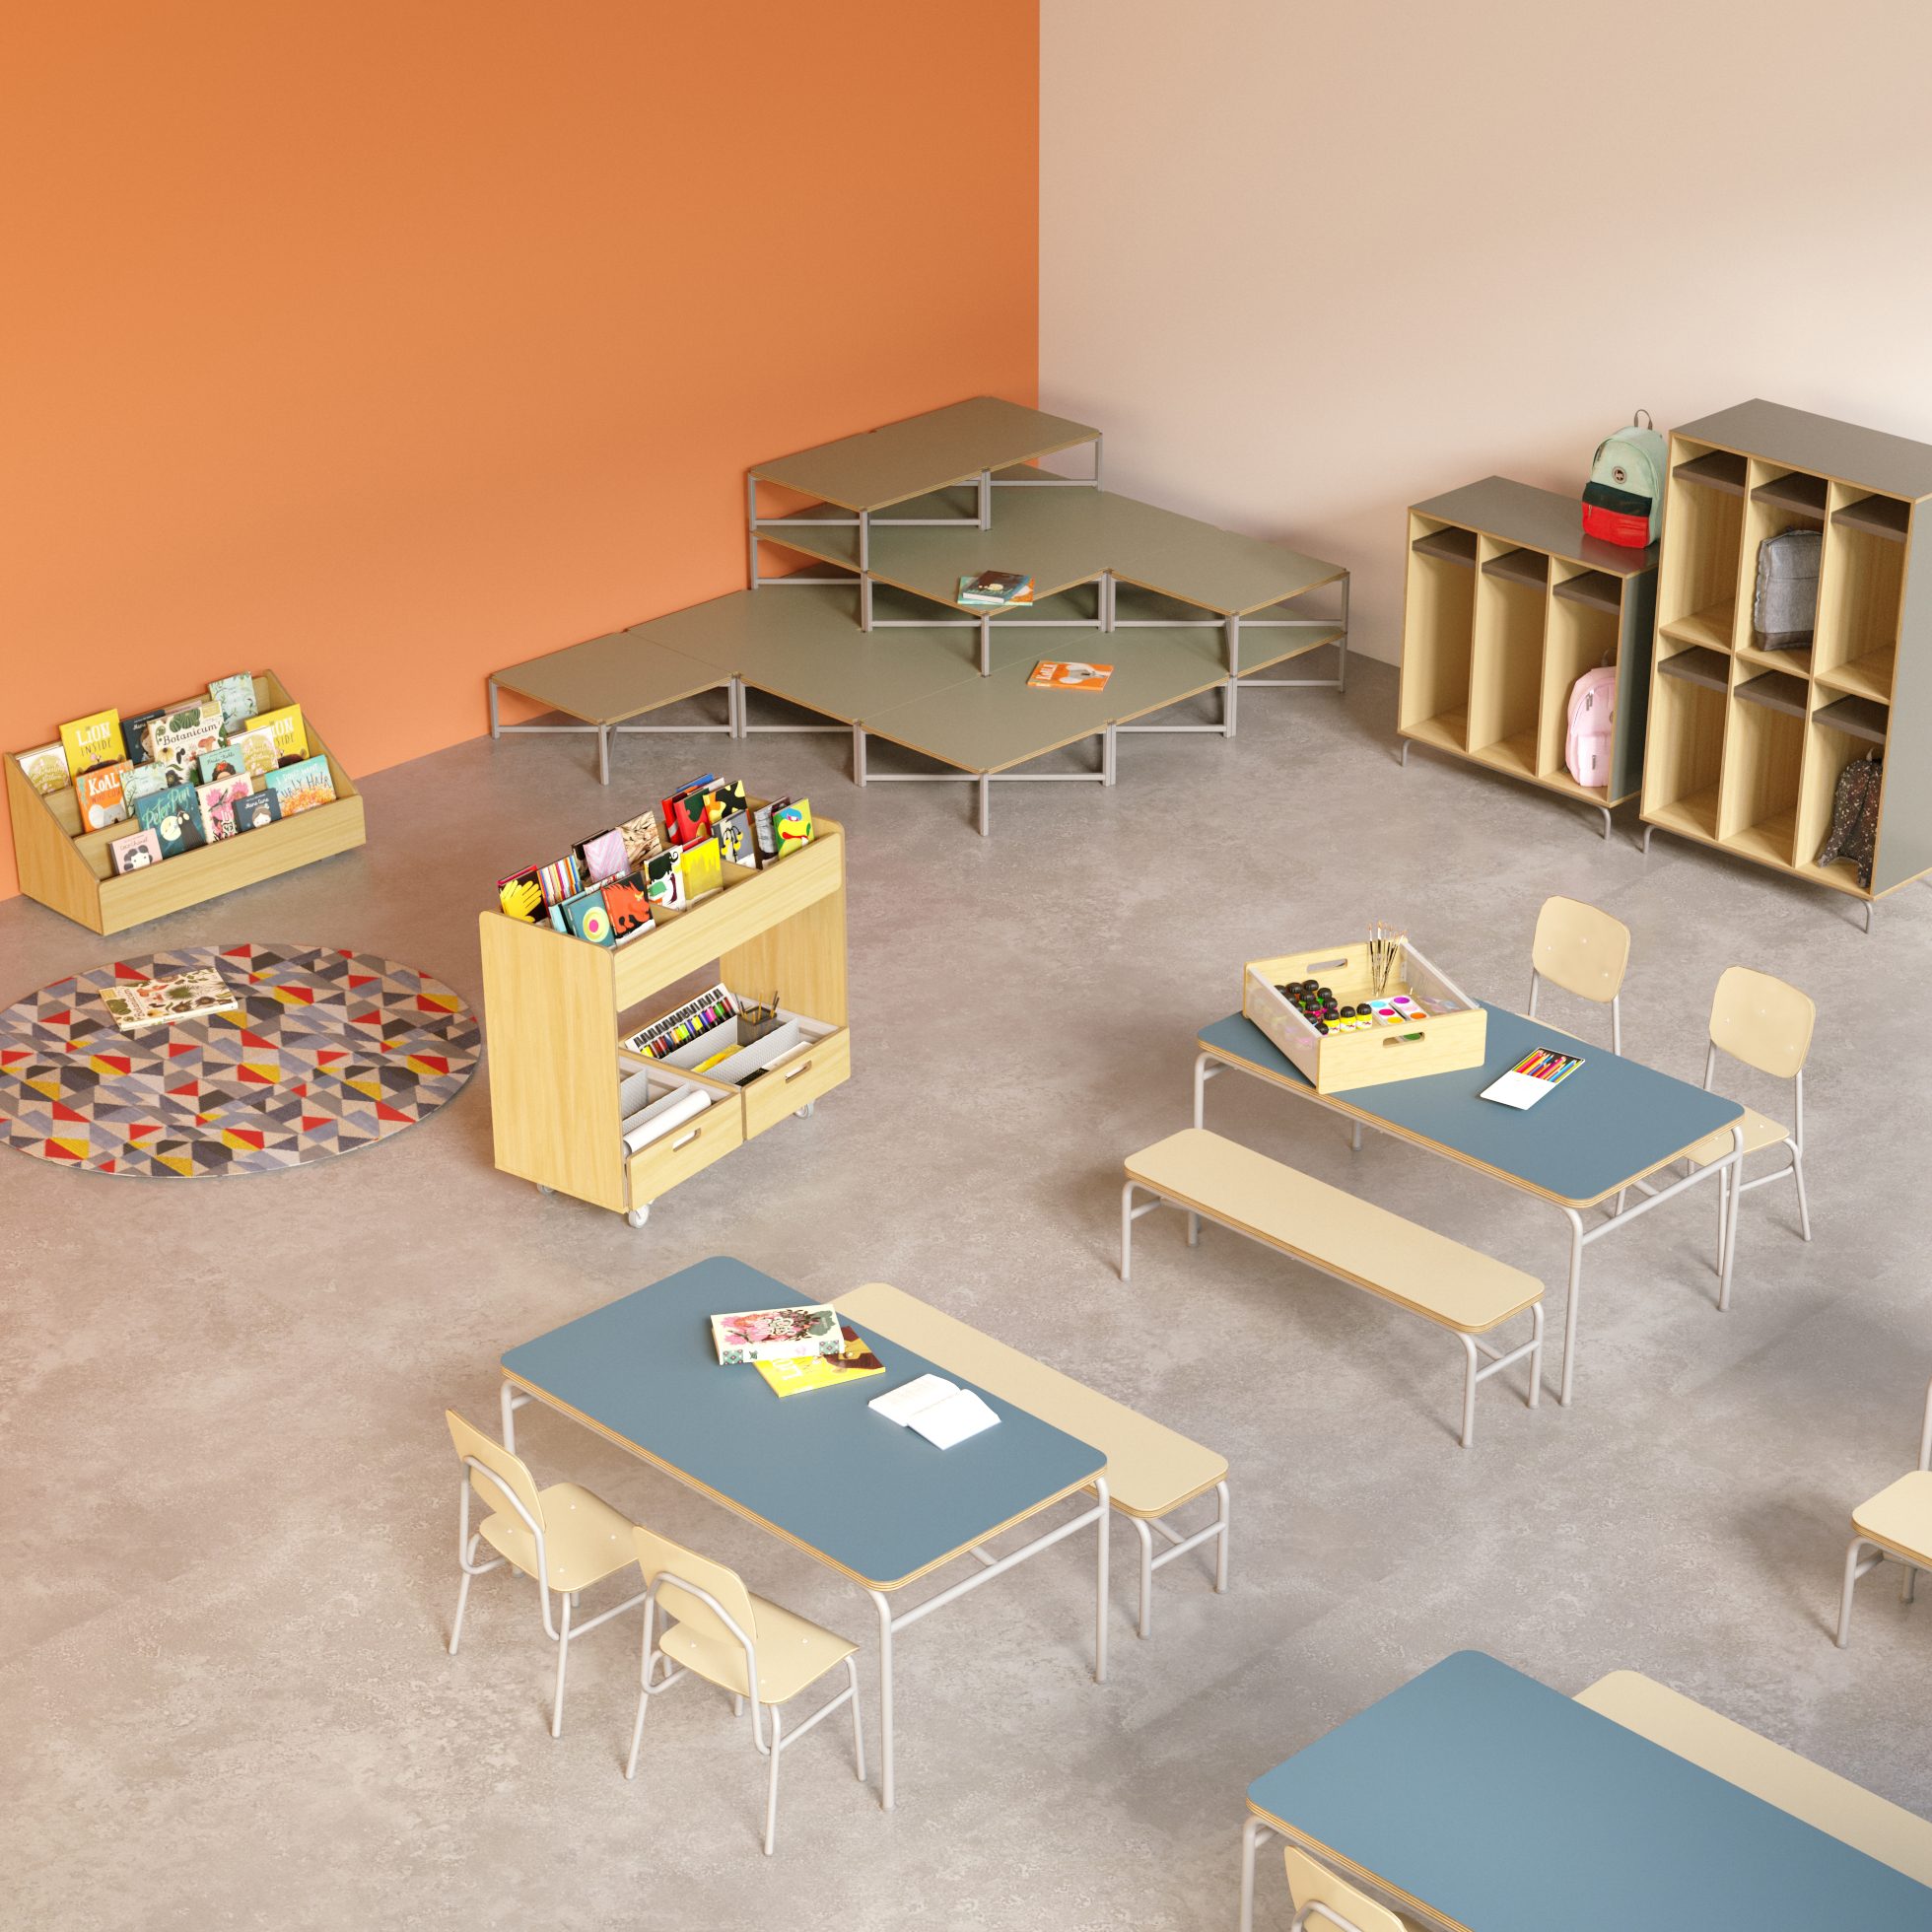 biblioteca escolar com mesas coletivas e cadeiras, expositores de livros e mochileiro s